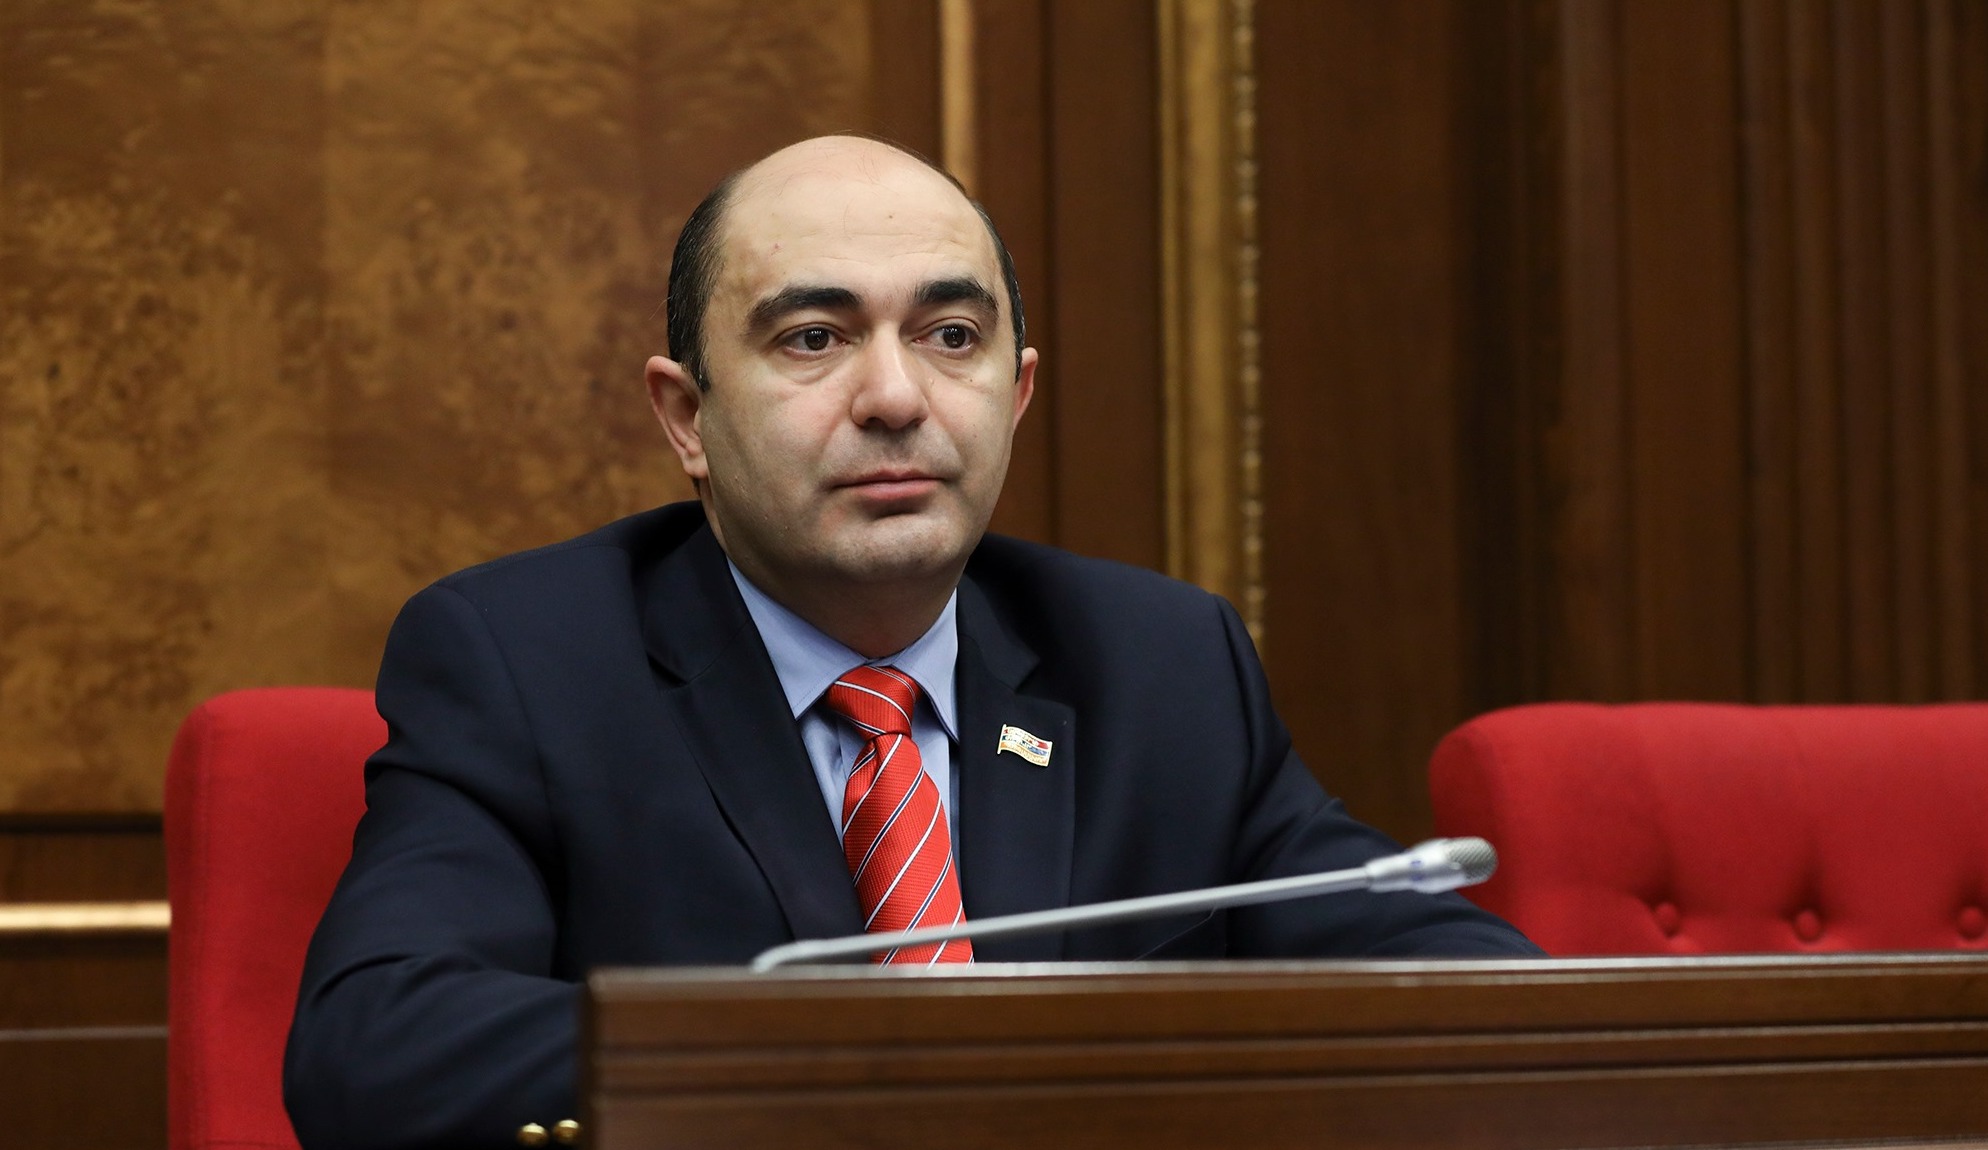 ԵՄ առաքելության նպատակն է նպաստել Հայաստանի սահմանամերձ շրջաններում կայունությանը. Մարուքյան